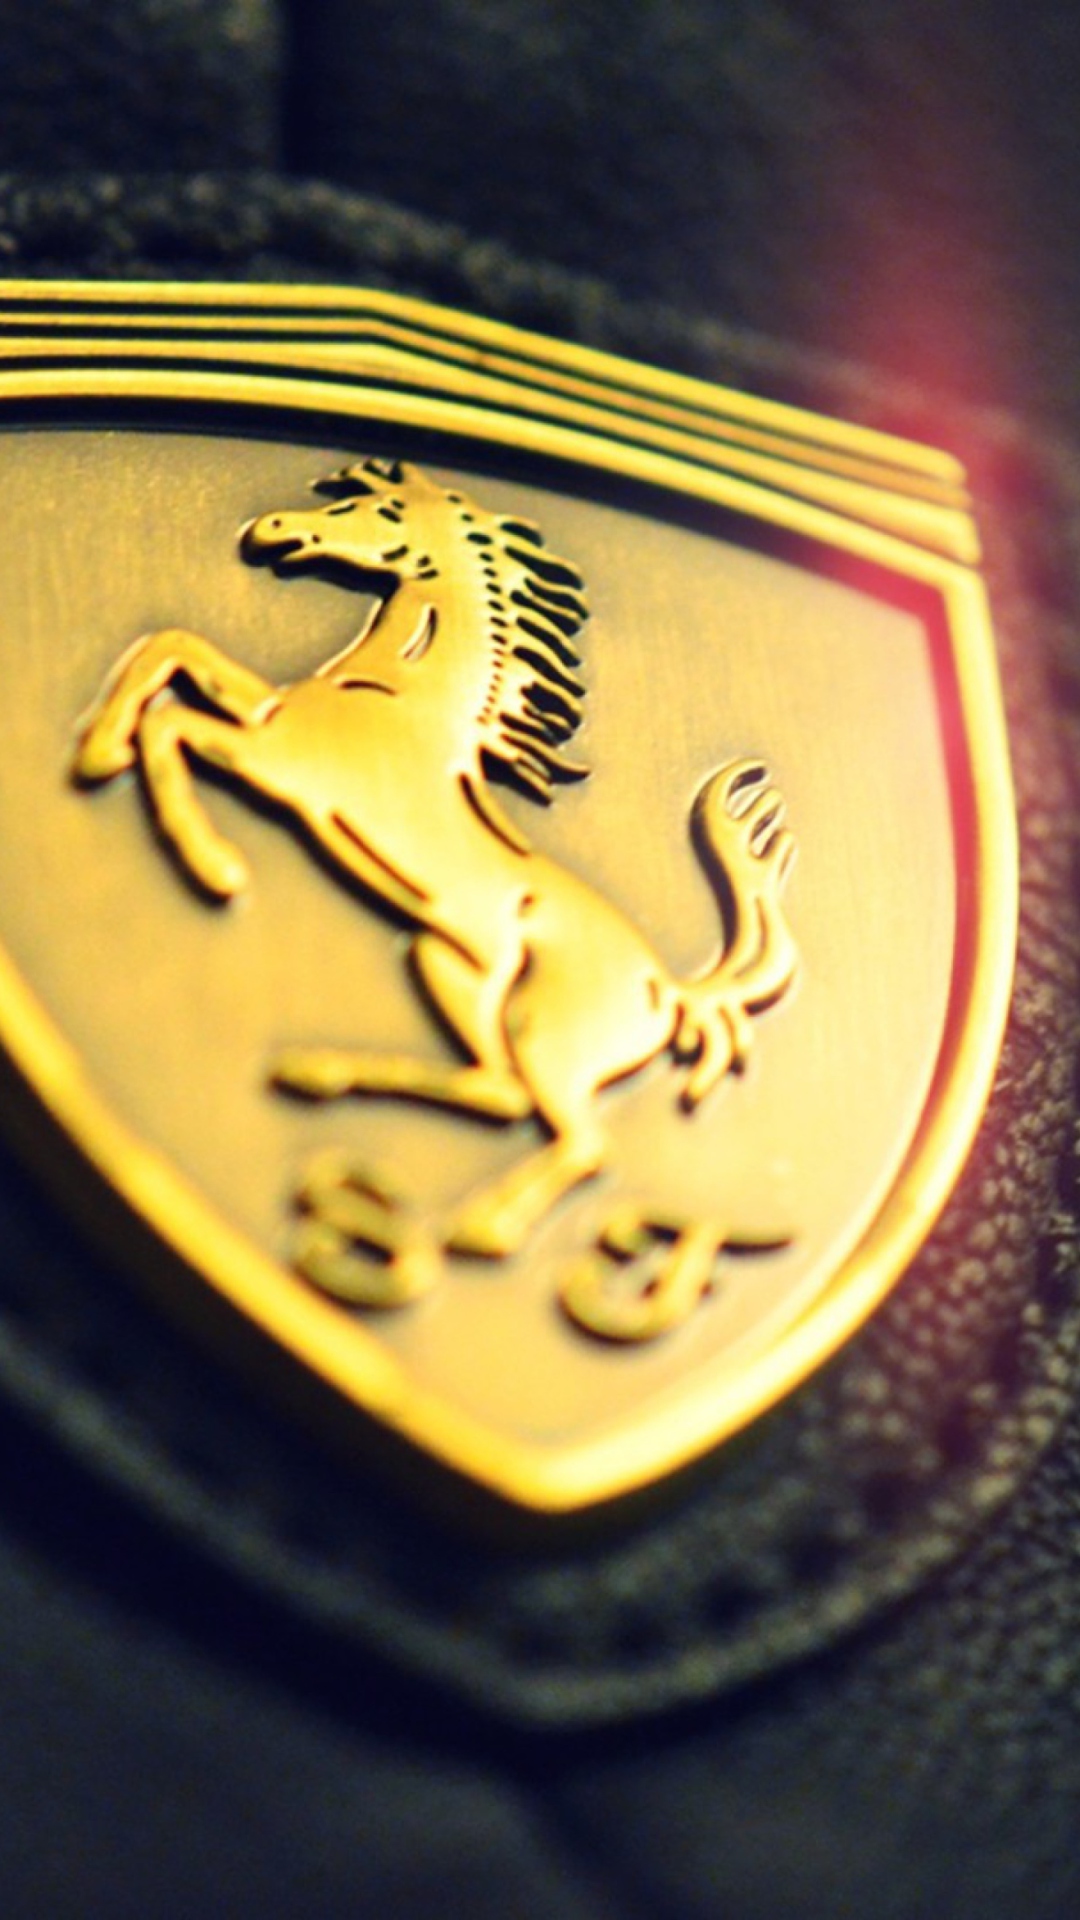 Ferrari Emblem wallpaper 1080x1920